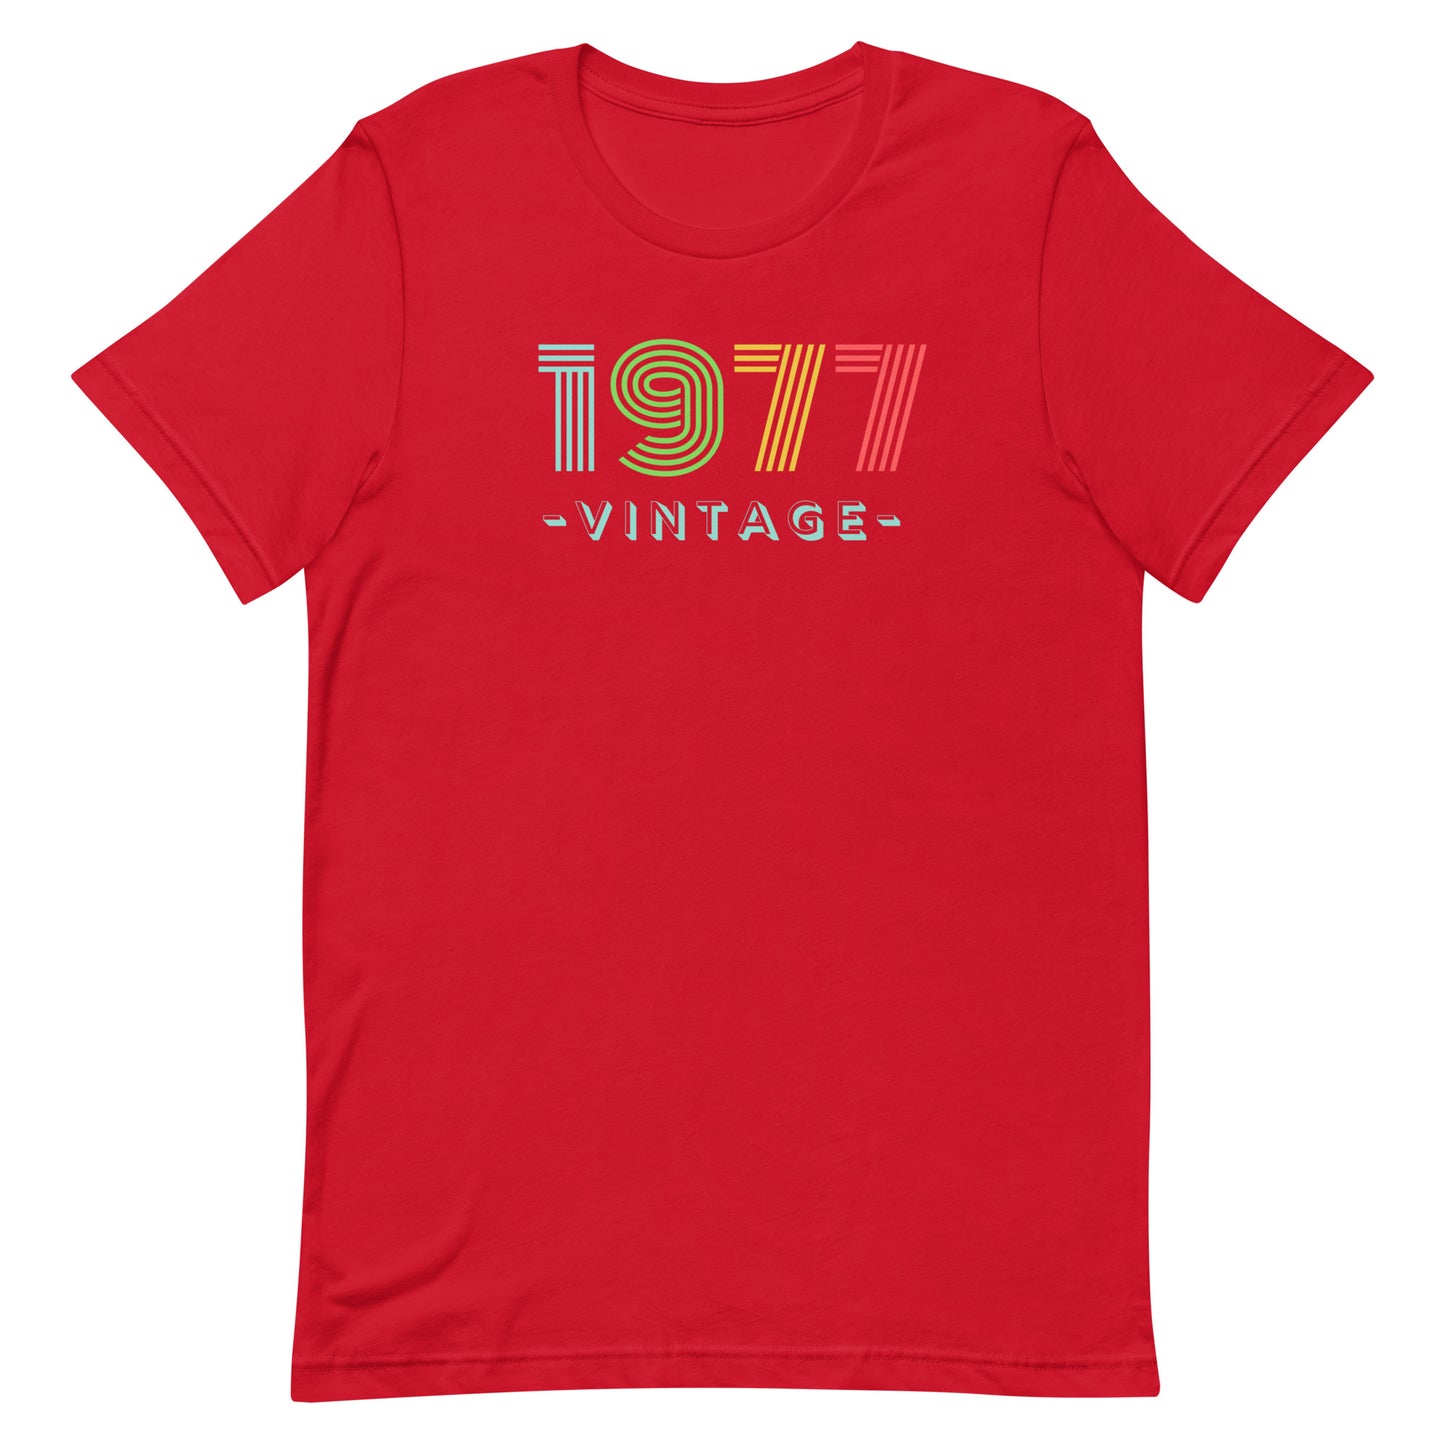 1977 Vintage Tee. Unisex T-shirt